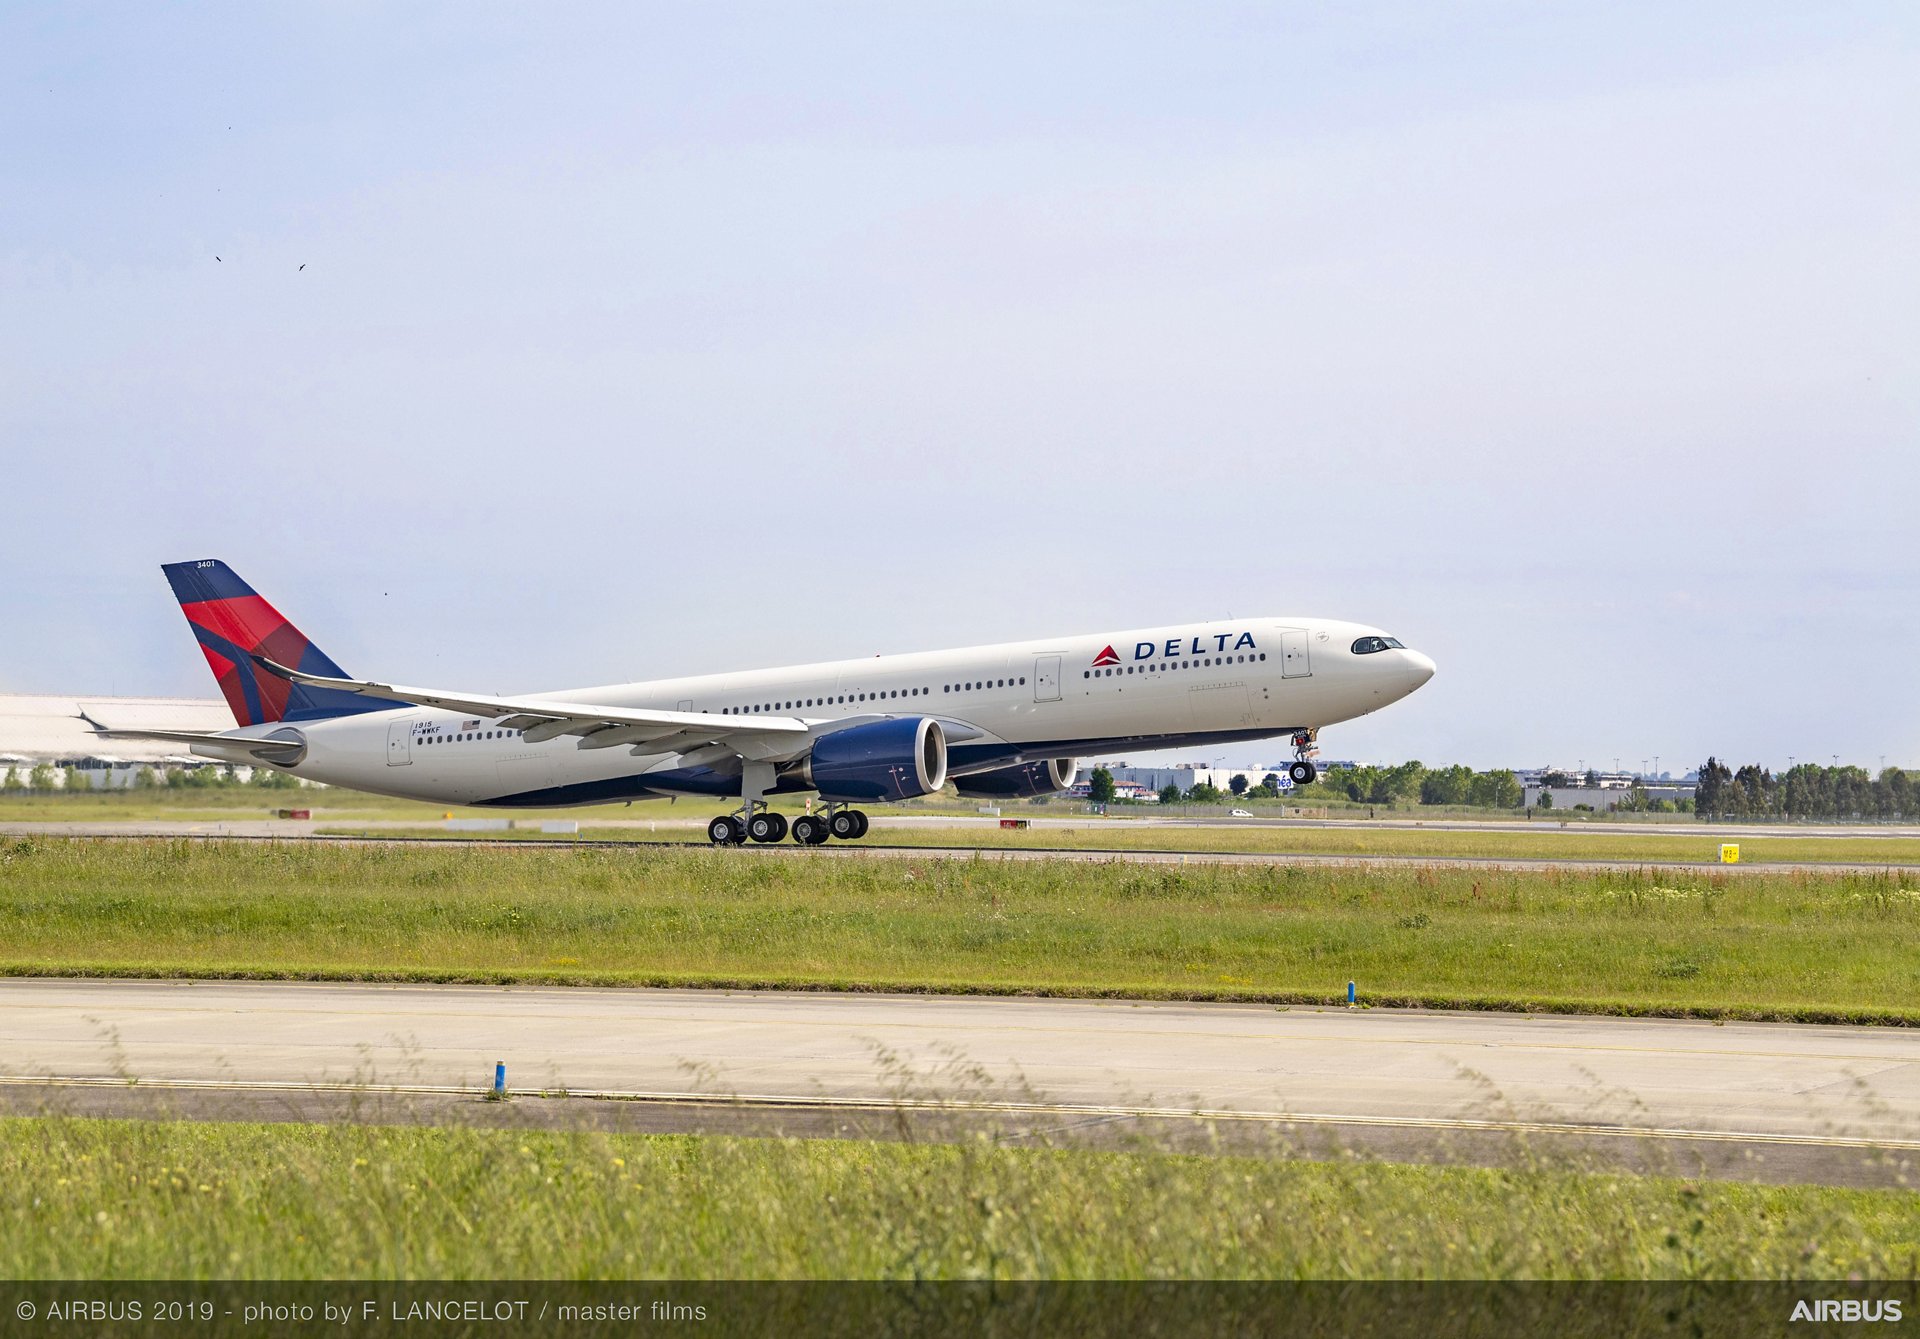 Airbus Liefert Erste Hocheffiziente A330neo An Delta Air